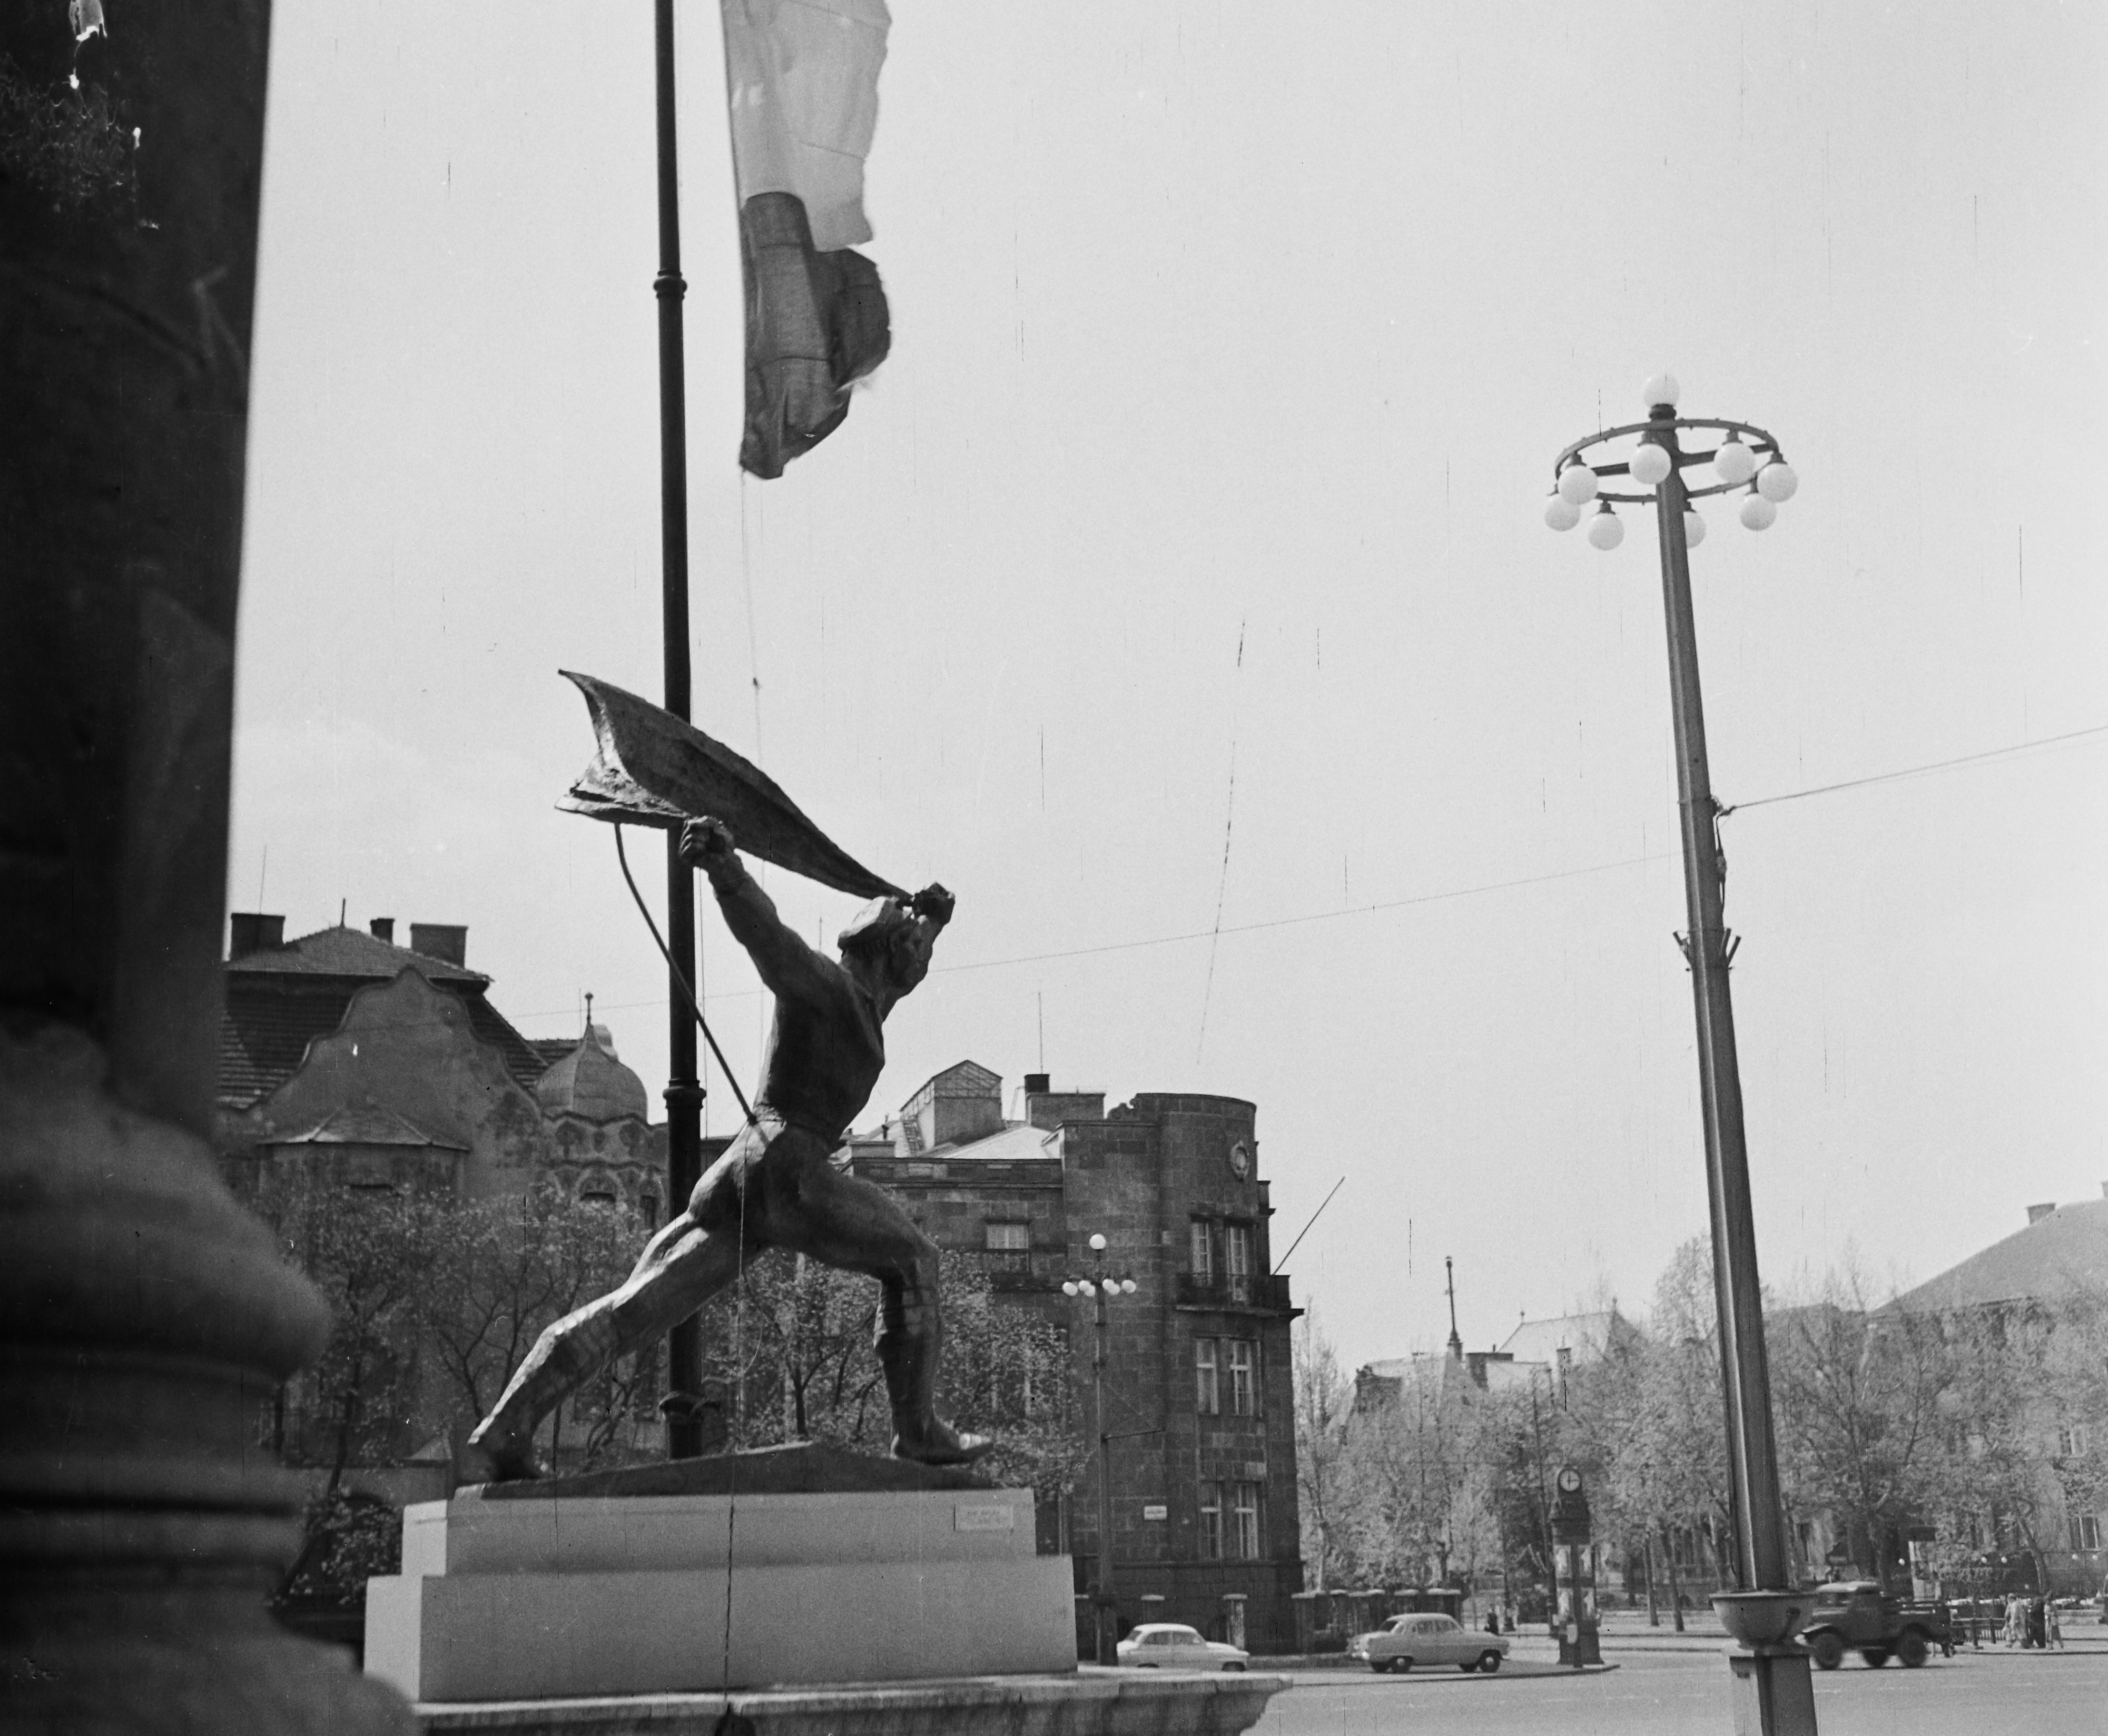 Fortepan / Bauer Sándor-Hősök tere, a felvétel a Műcsarnok előtt készült, jobbra az Andrássy út (Népköztársaság útja). Kiss István Tanácsköztársasági emlékmű tanulmánya (1959)